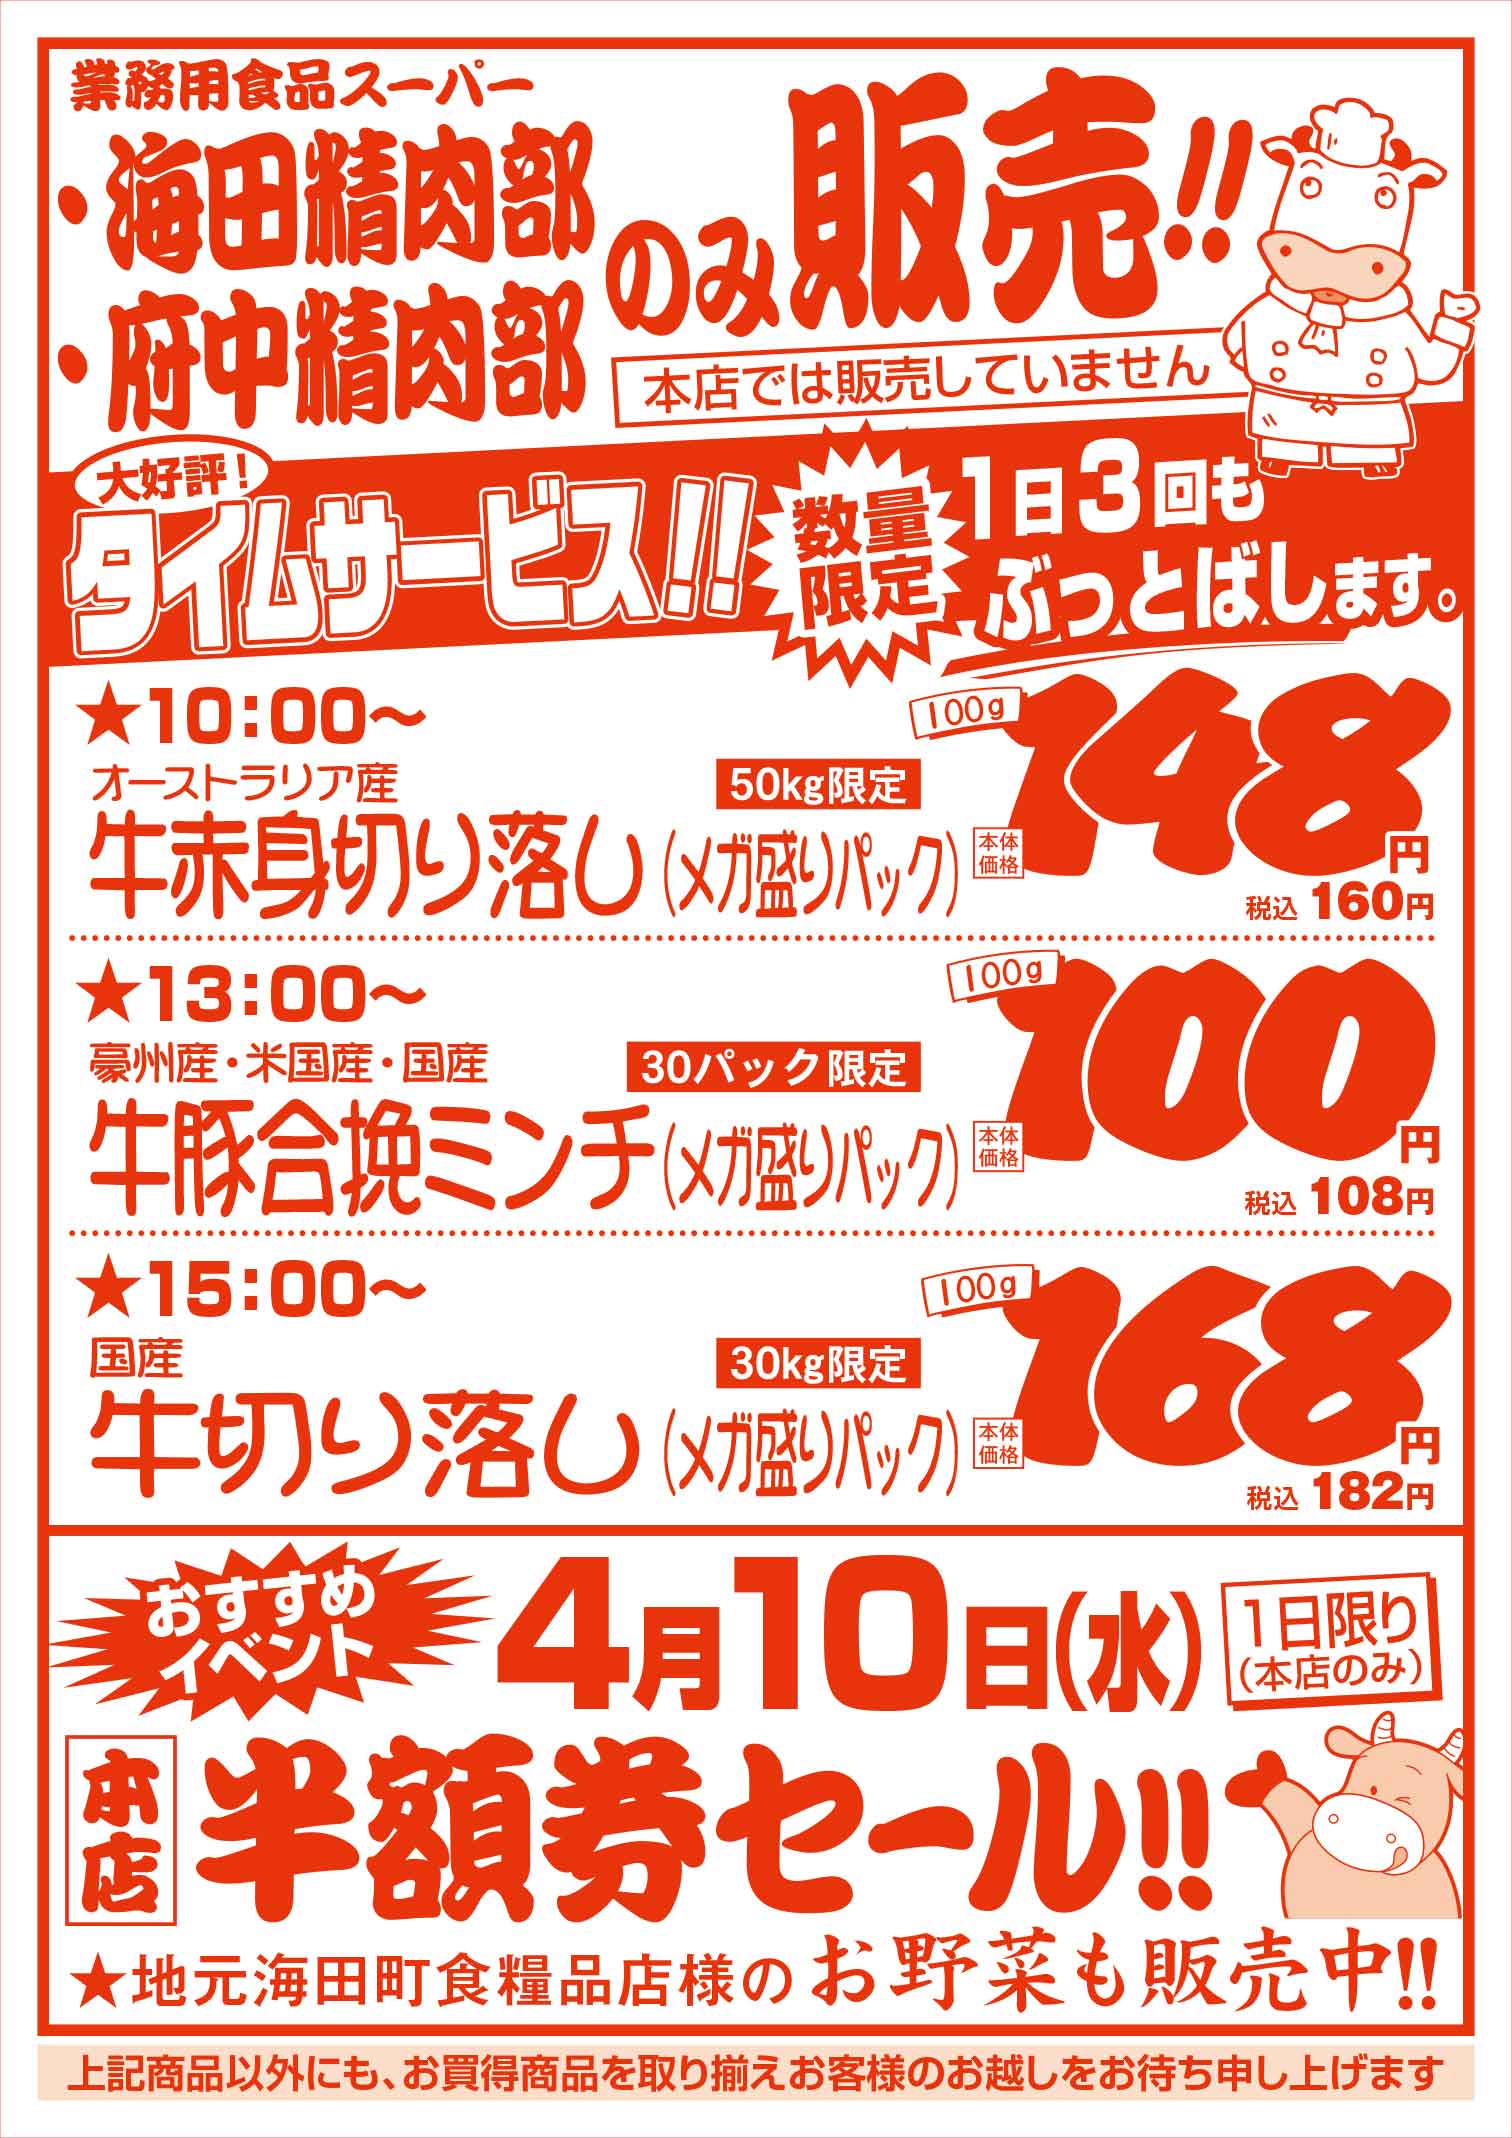 業務用食品スーパー海田精肉部 3/29 肉の日セールチラシウラ